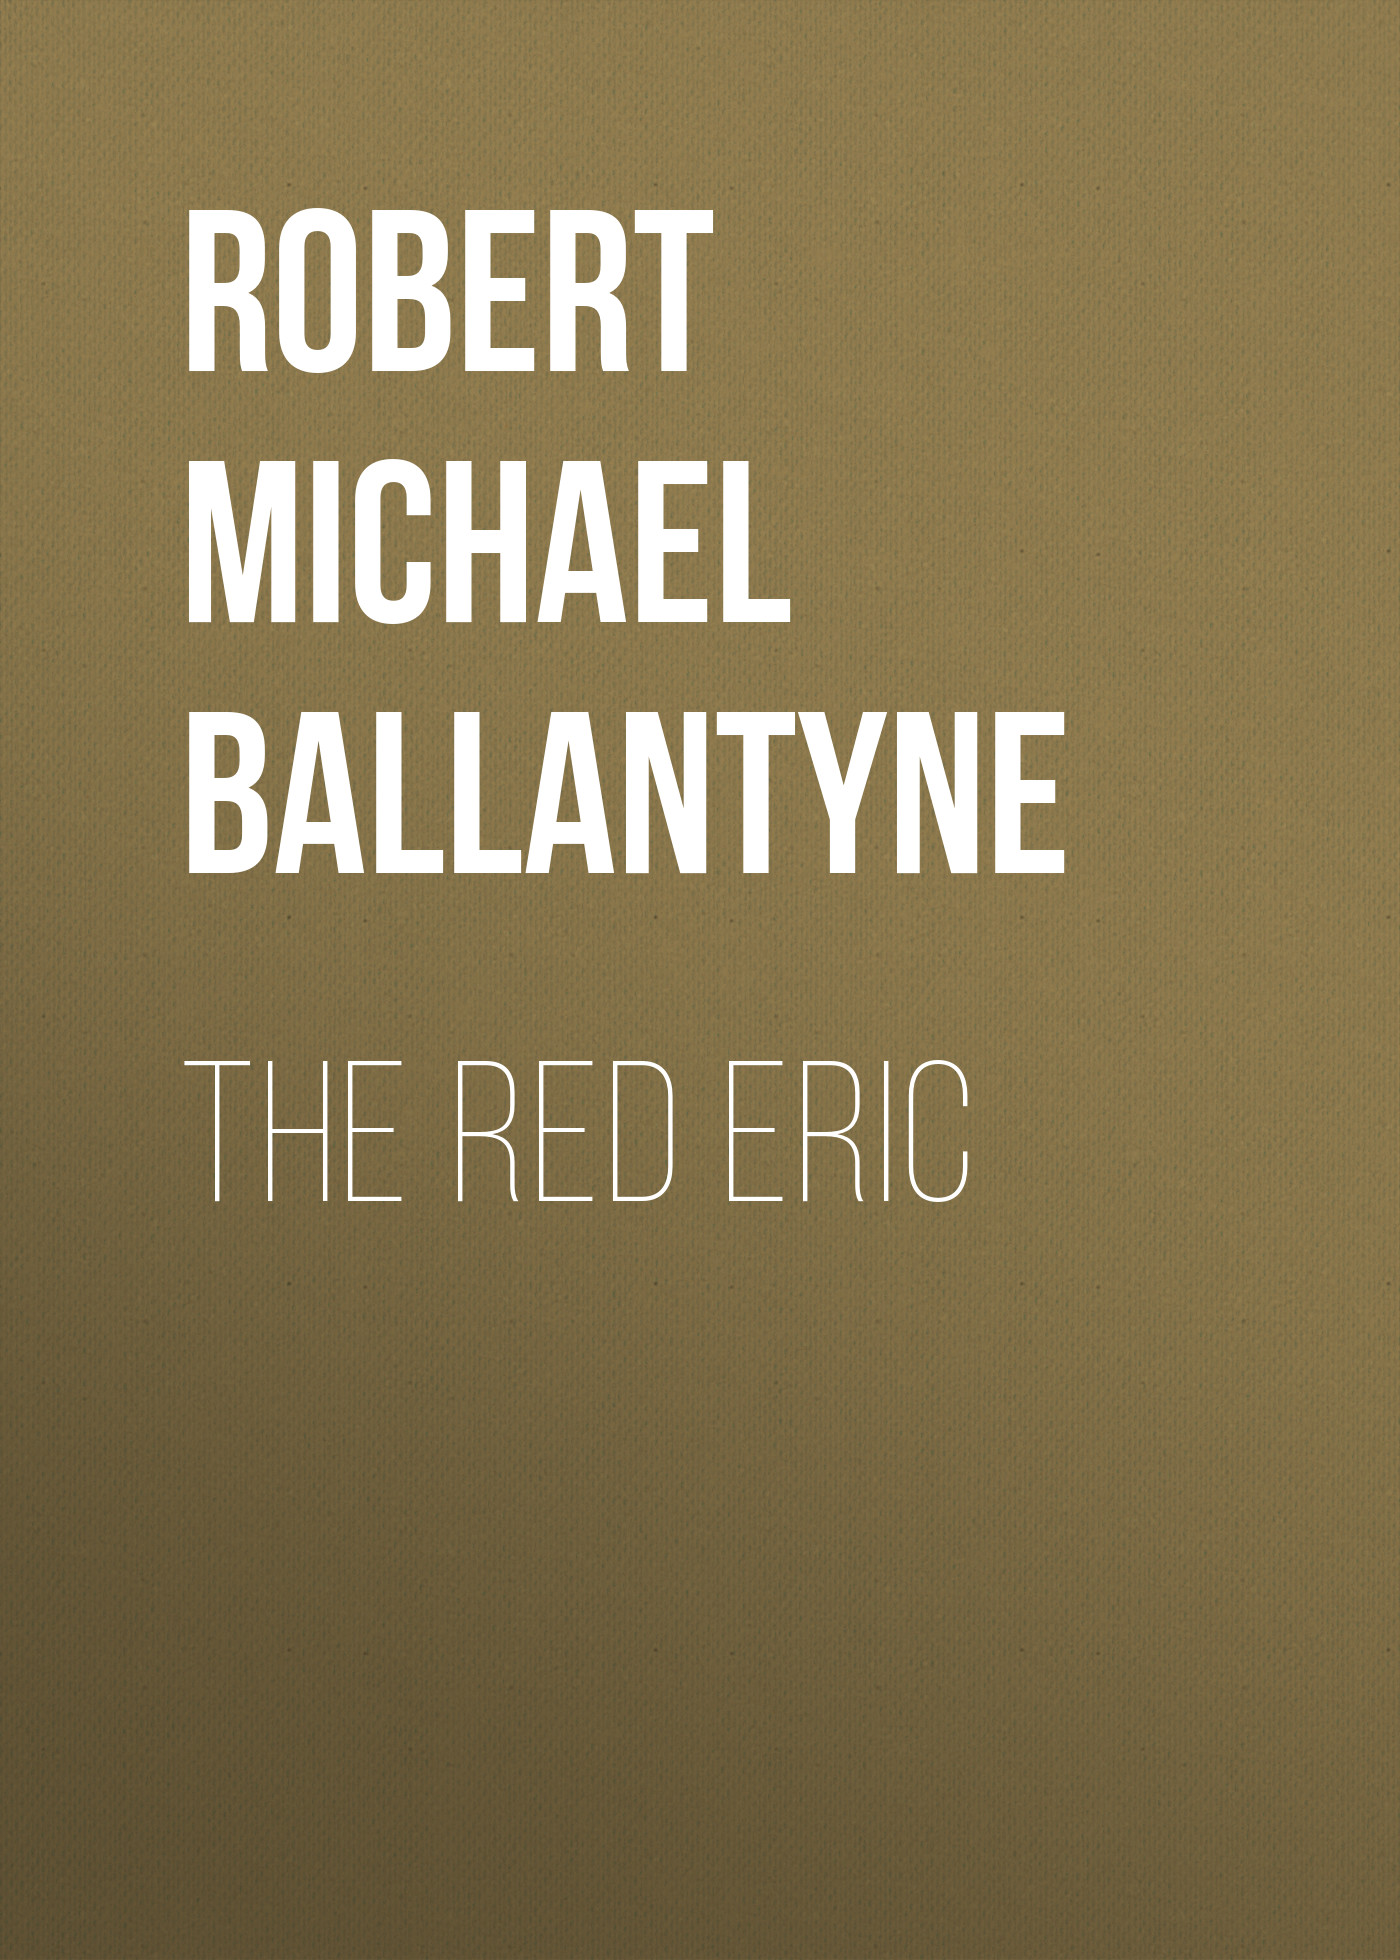 Книга The Red Eric из серии , созданная Robert Michael Ballantyne, может относится к жанру Детские приключения, Литература 19 века, Зарубежная старинная литература, Зарубежная классика, Зарубежные детские книги. Стоимость электронной книги The Red Eric с идентификатором 36095237 составляет 0 руб.